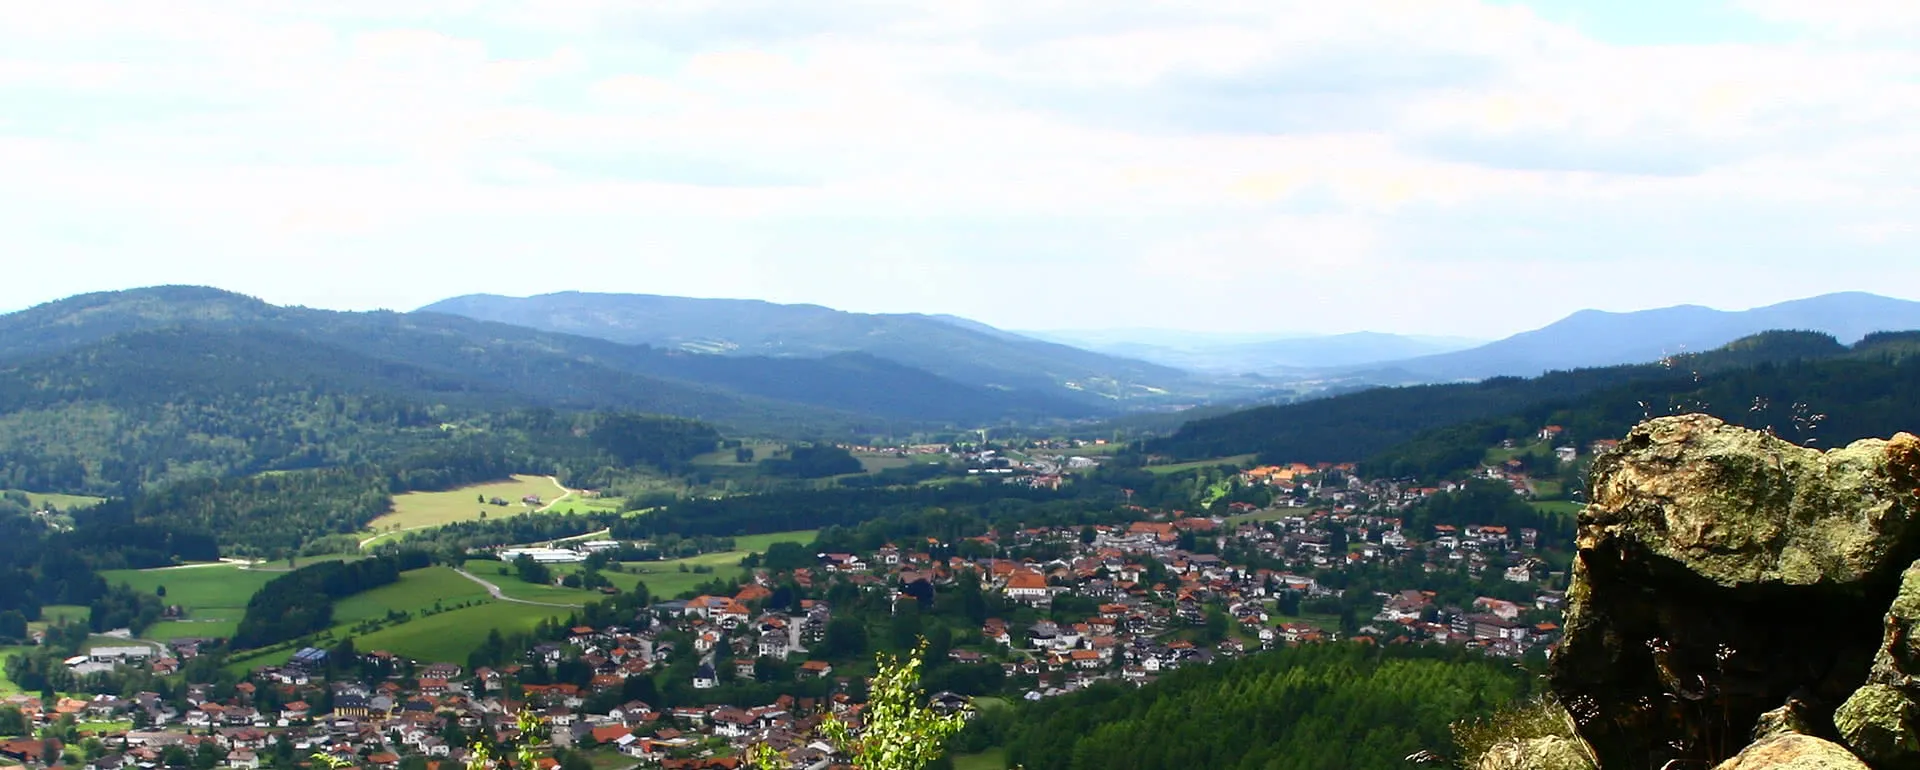 Bodenmais panorama image